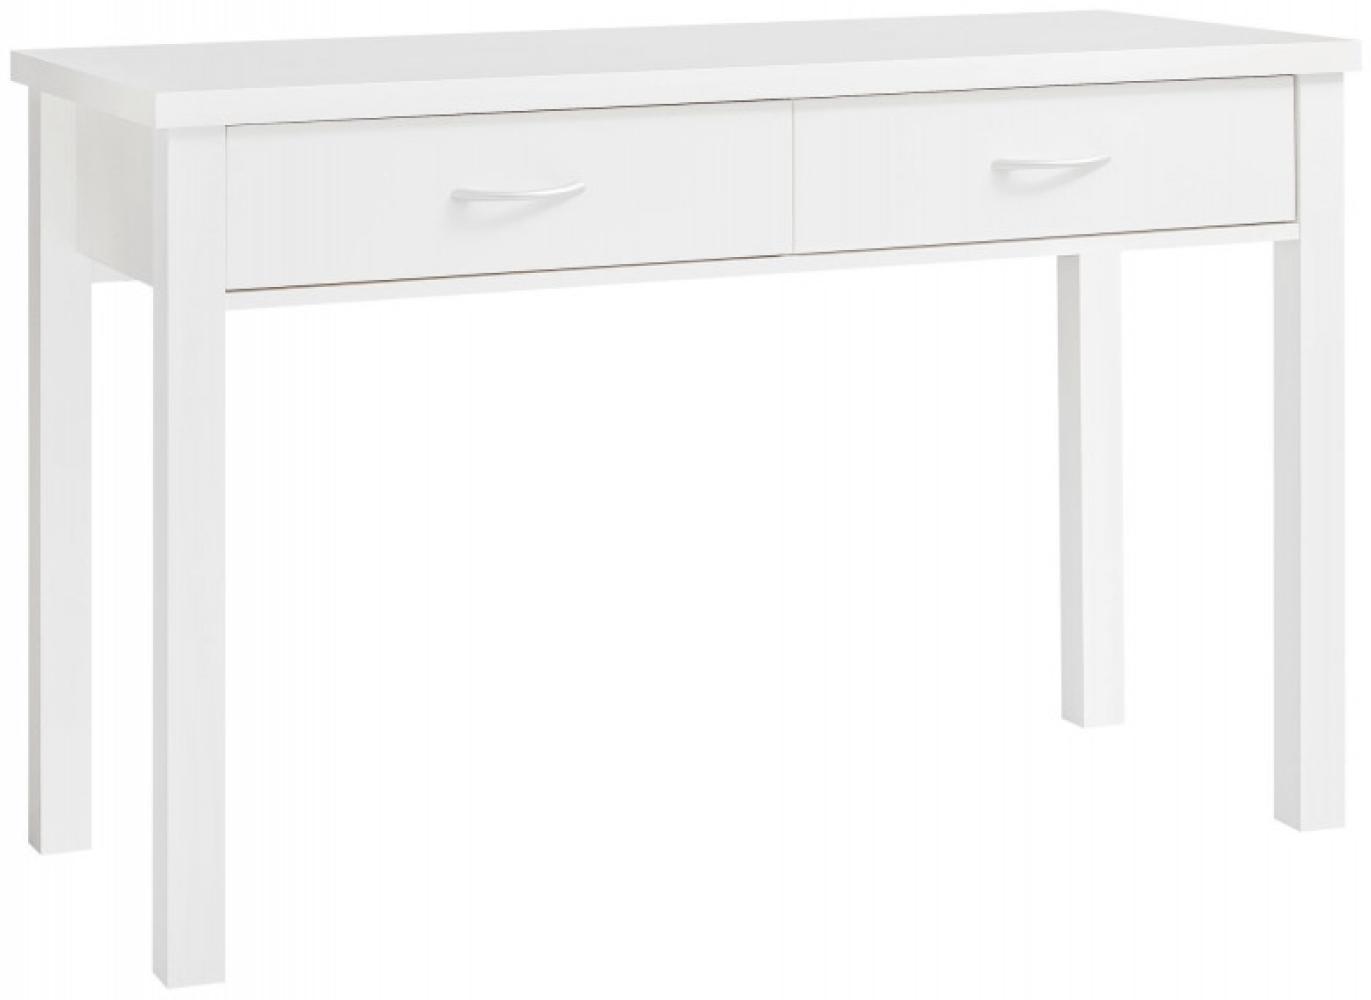 'Samy' Schreibtisch mit 2 Schubladen, Holz Weiß, 120 x 77 x 50 cm Bild 1